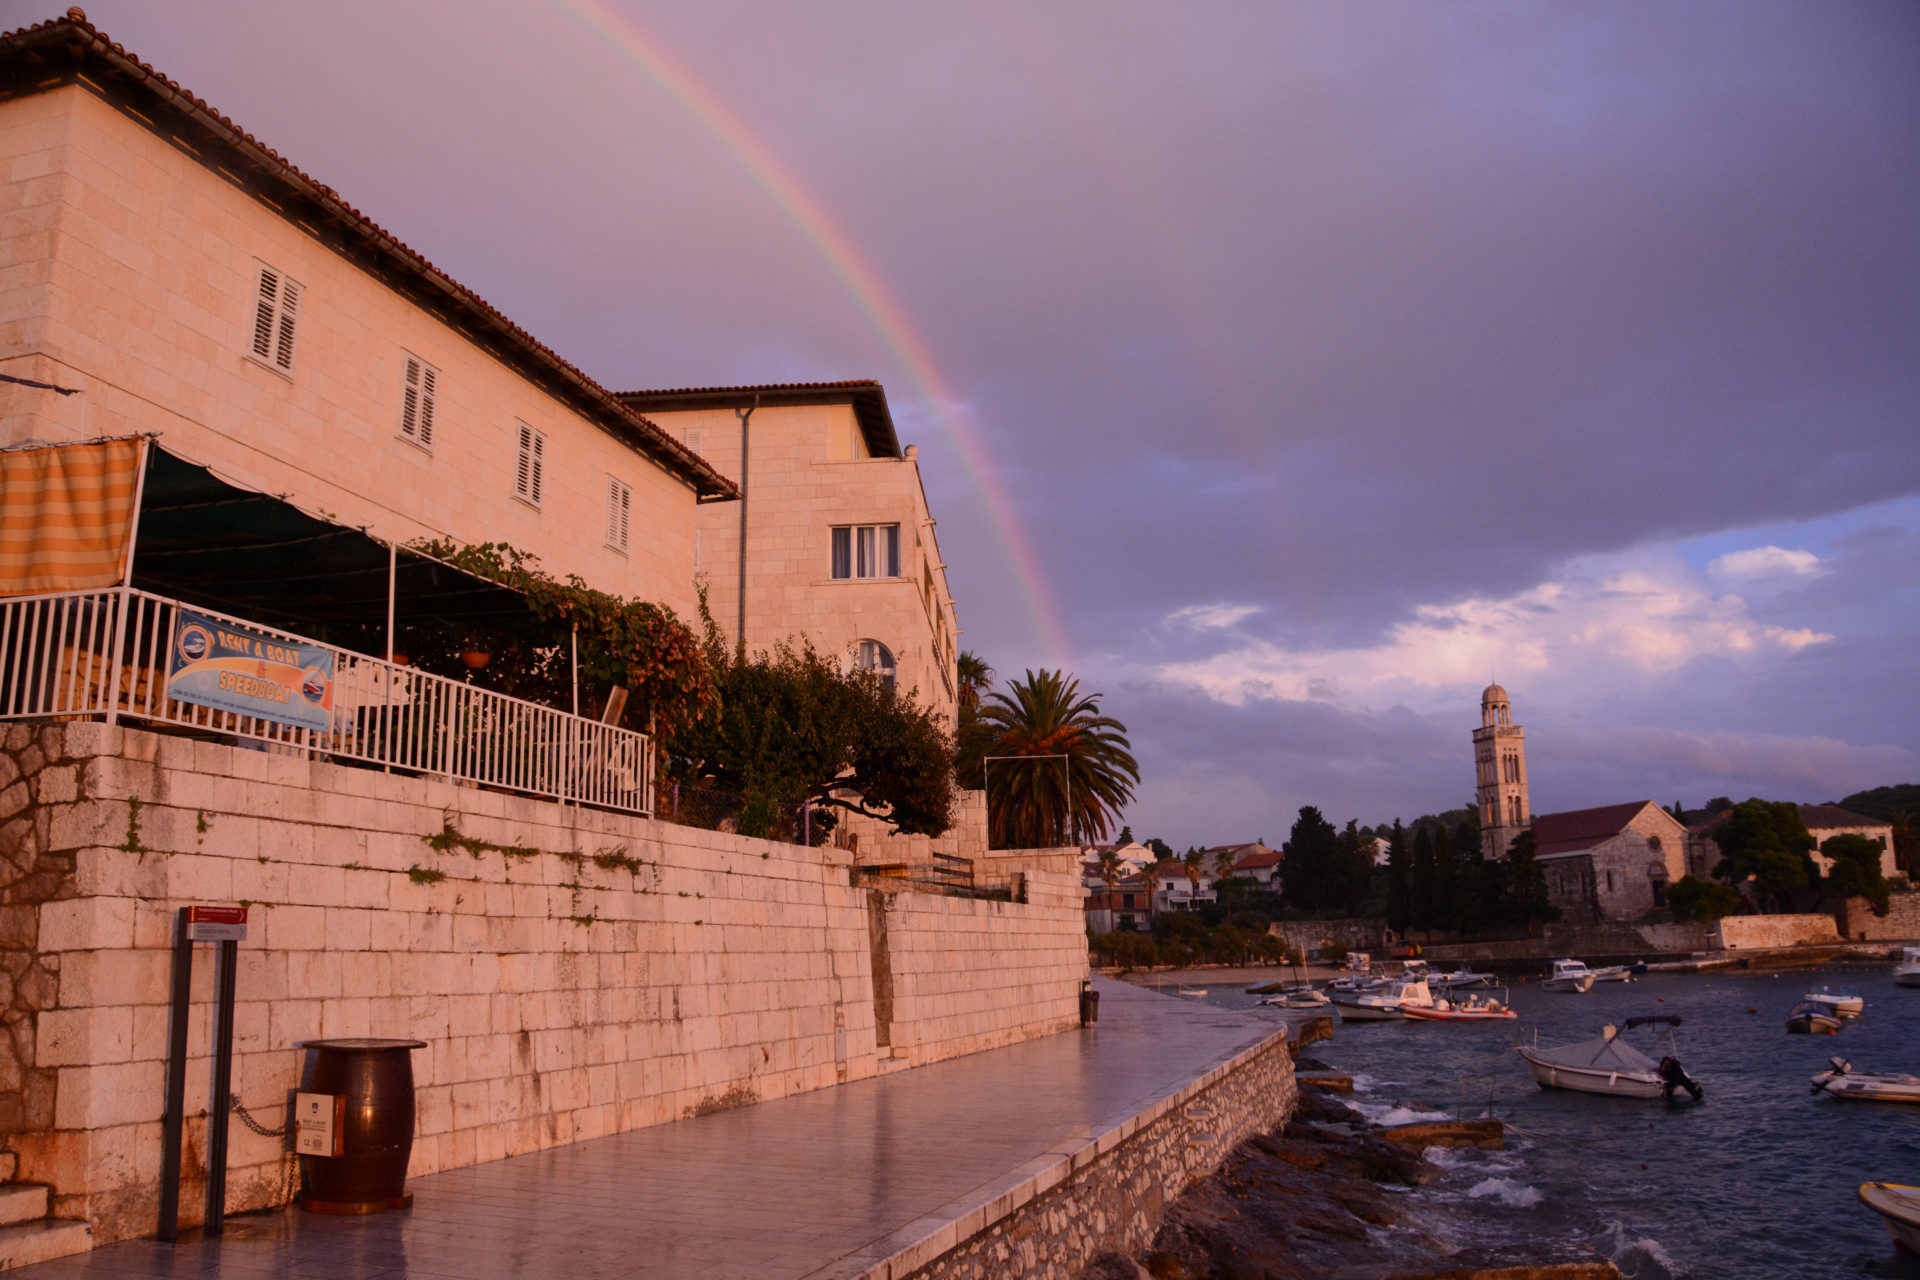 Regenbogen über Steinhäusern auf der dalmatischen Insel Hvar mit Blick auf den Hafen